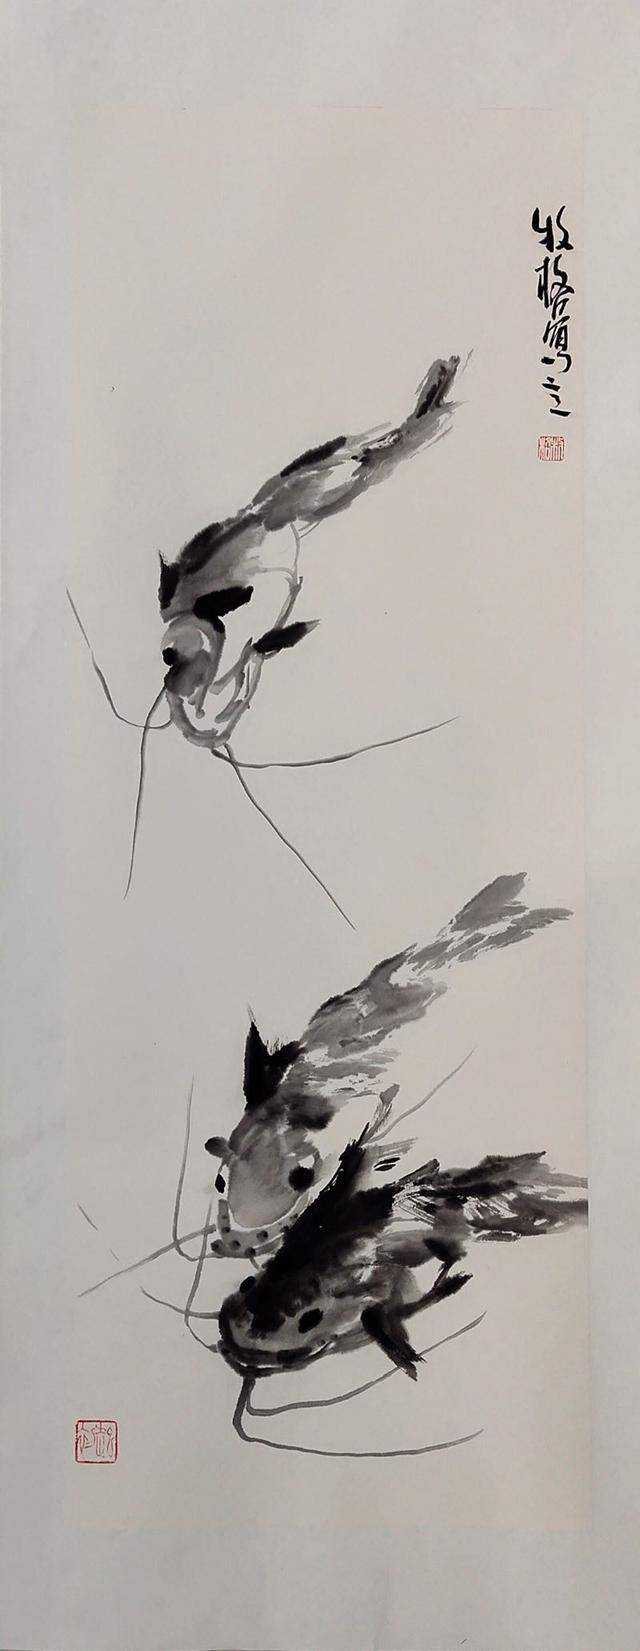 青年画家牧格写意花鸟动物作品--花鸟鱼虫皆入画